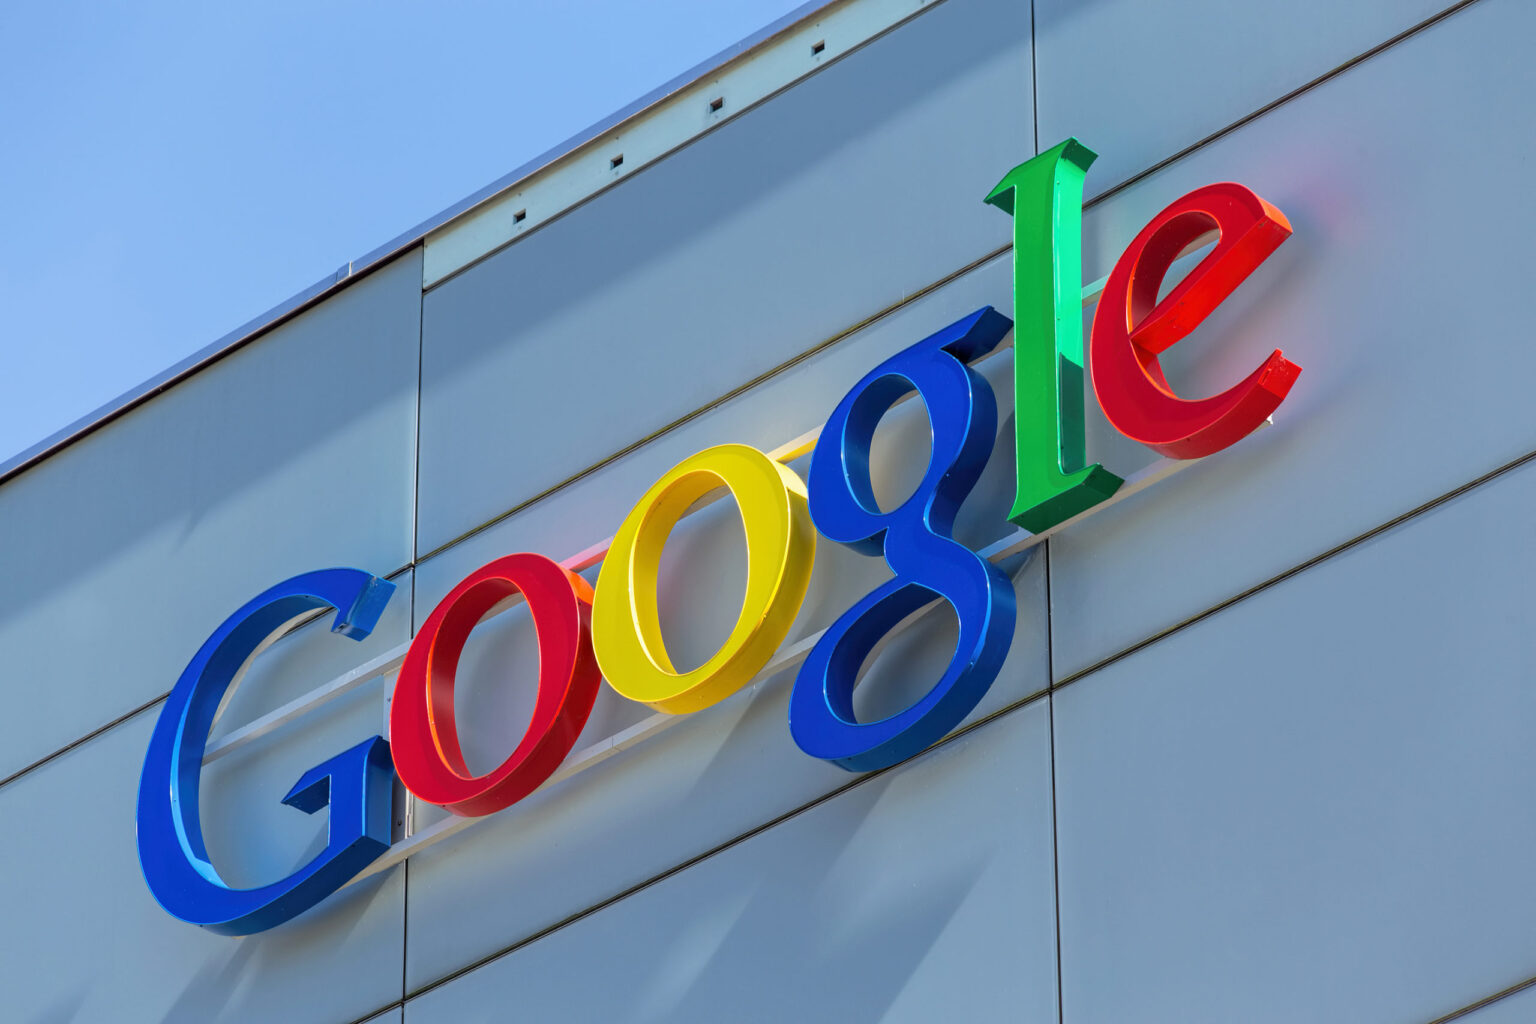 "جوجل" تحظر 3 تطبيقات جديدة تسرق أموال المستخدمين وبياناتهم 